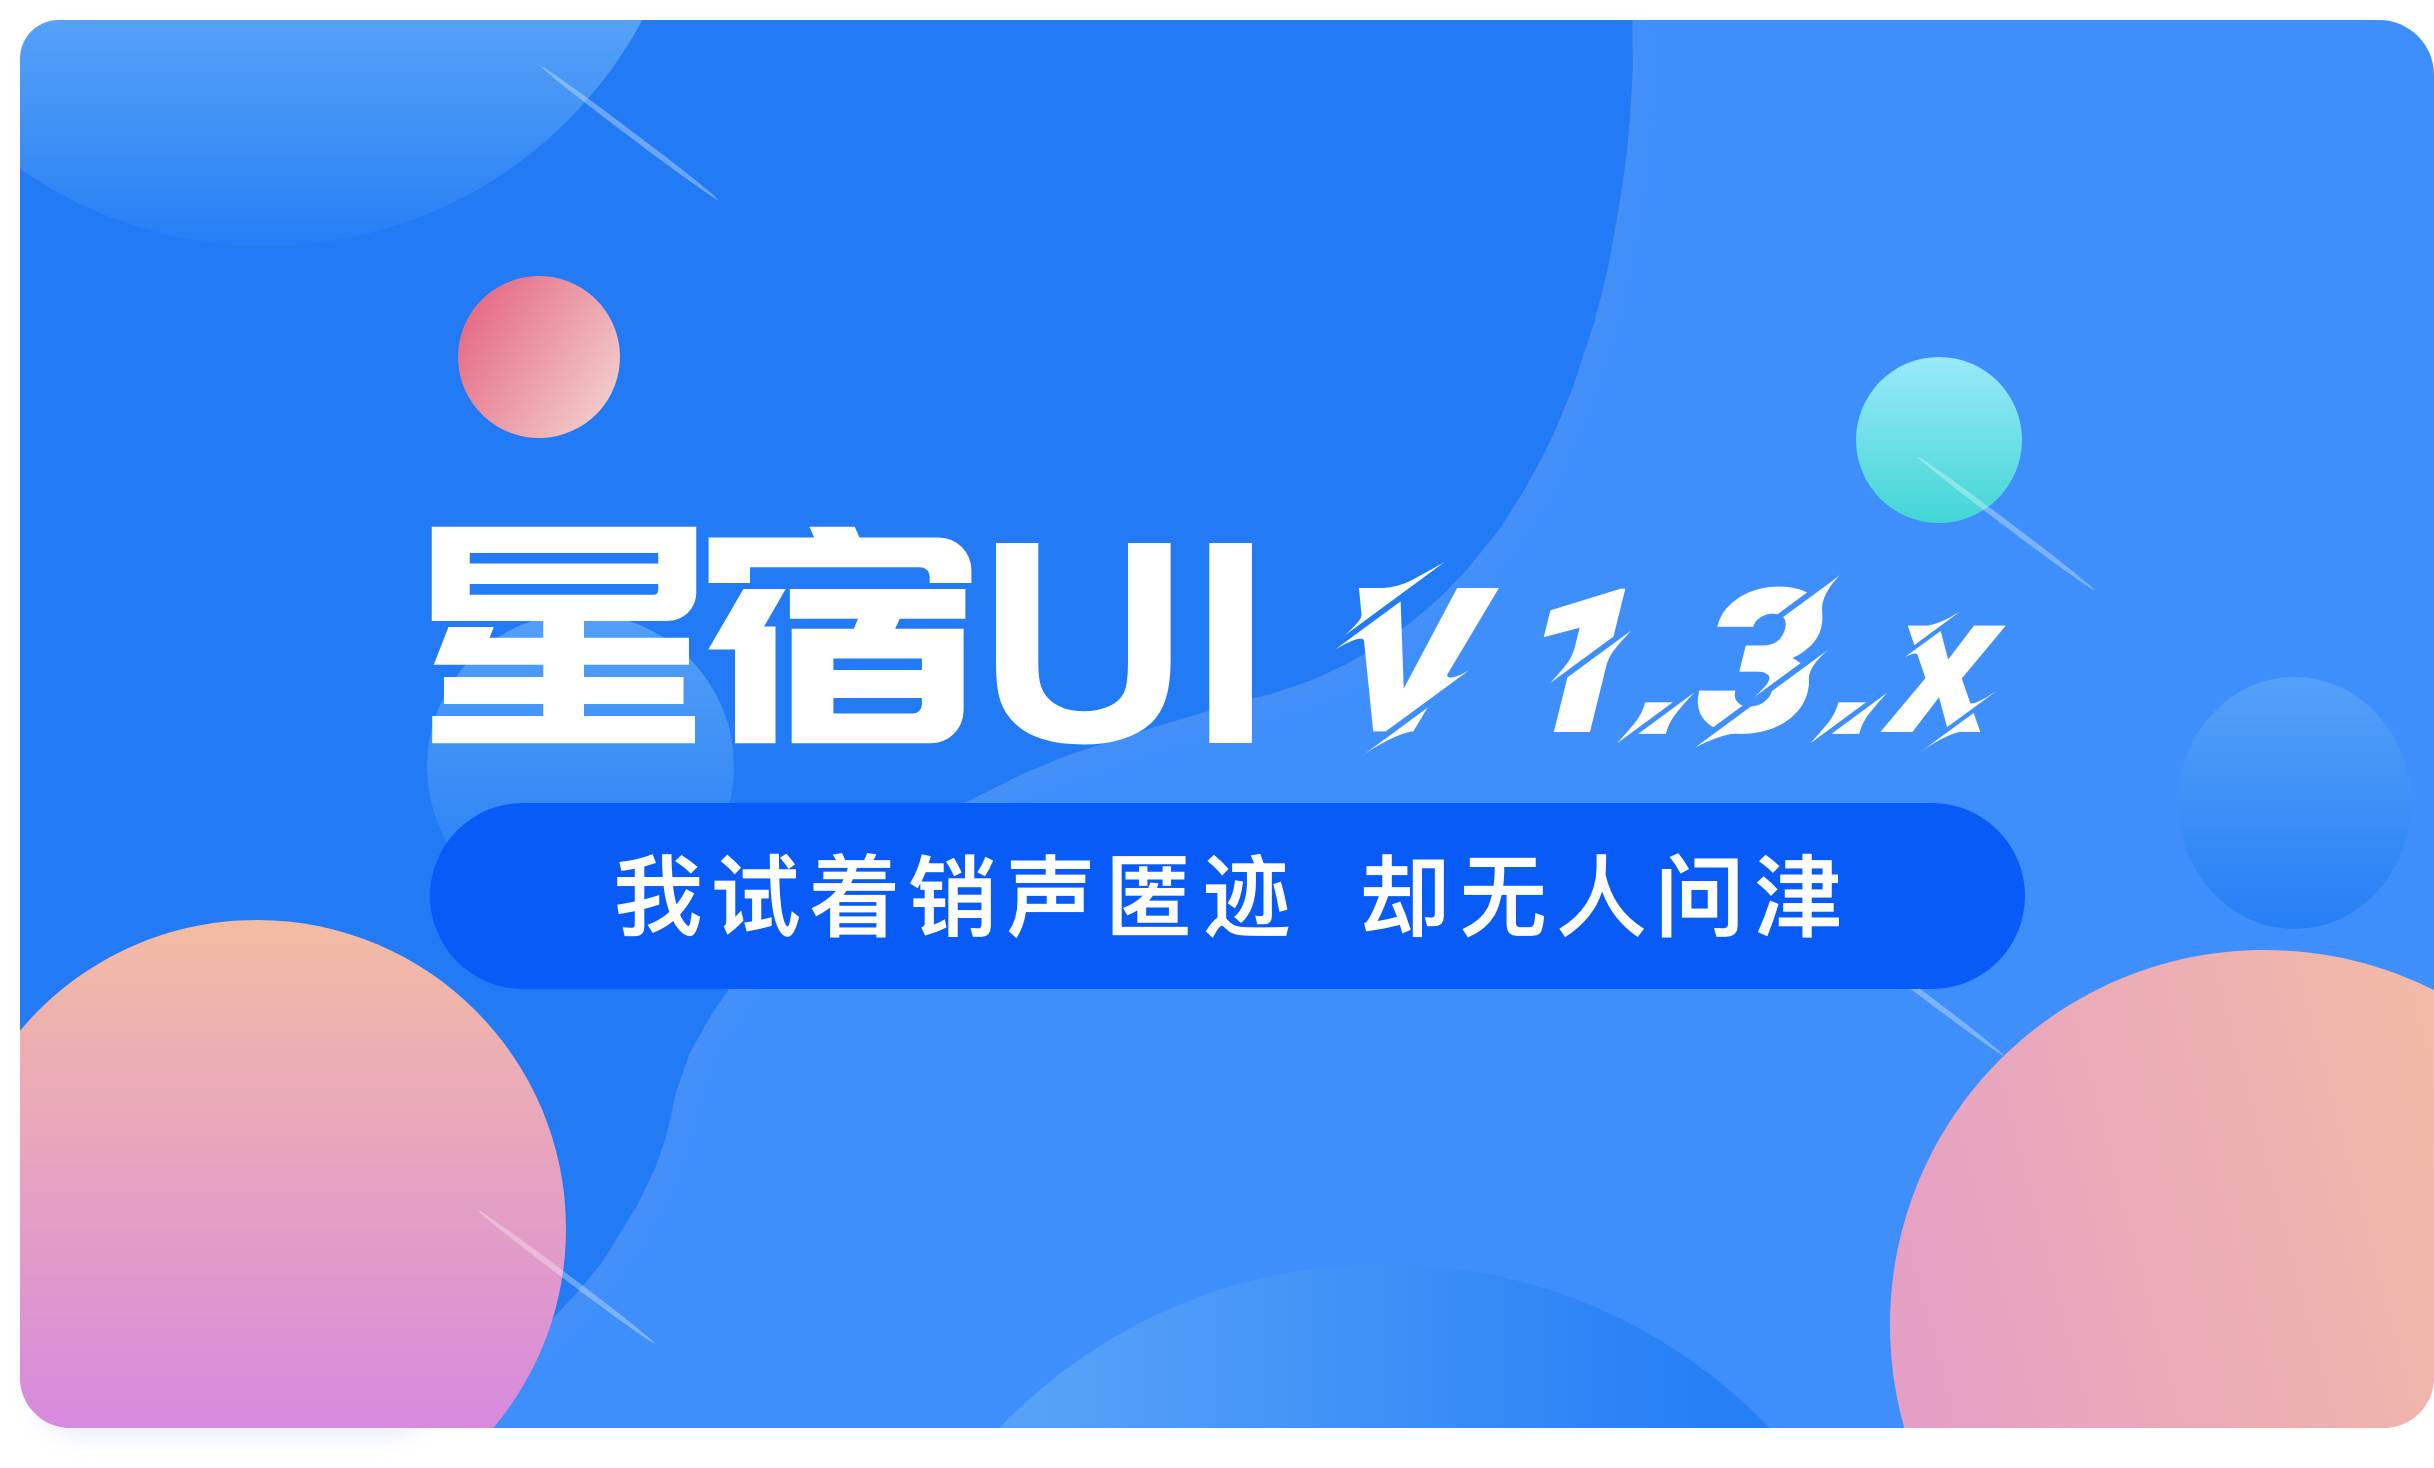 星宿UI V1.3 支持腾讯视频 修复评论 wordpress小程序开源资讯资源下载